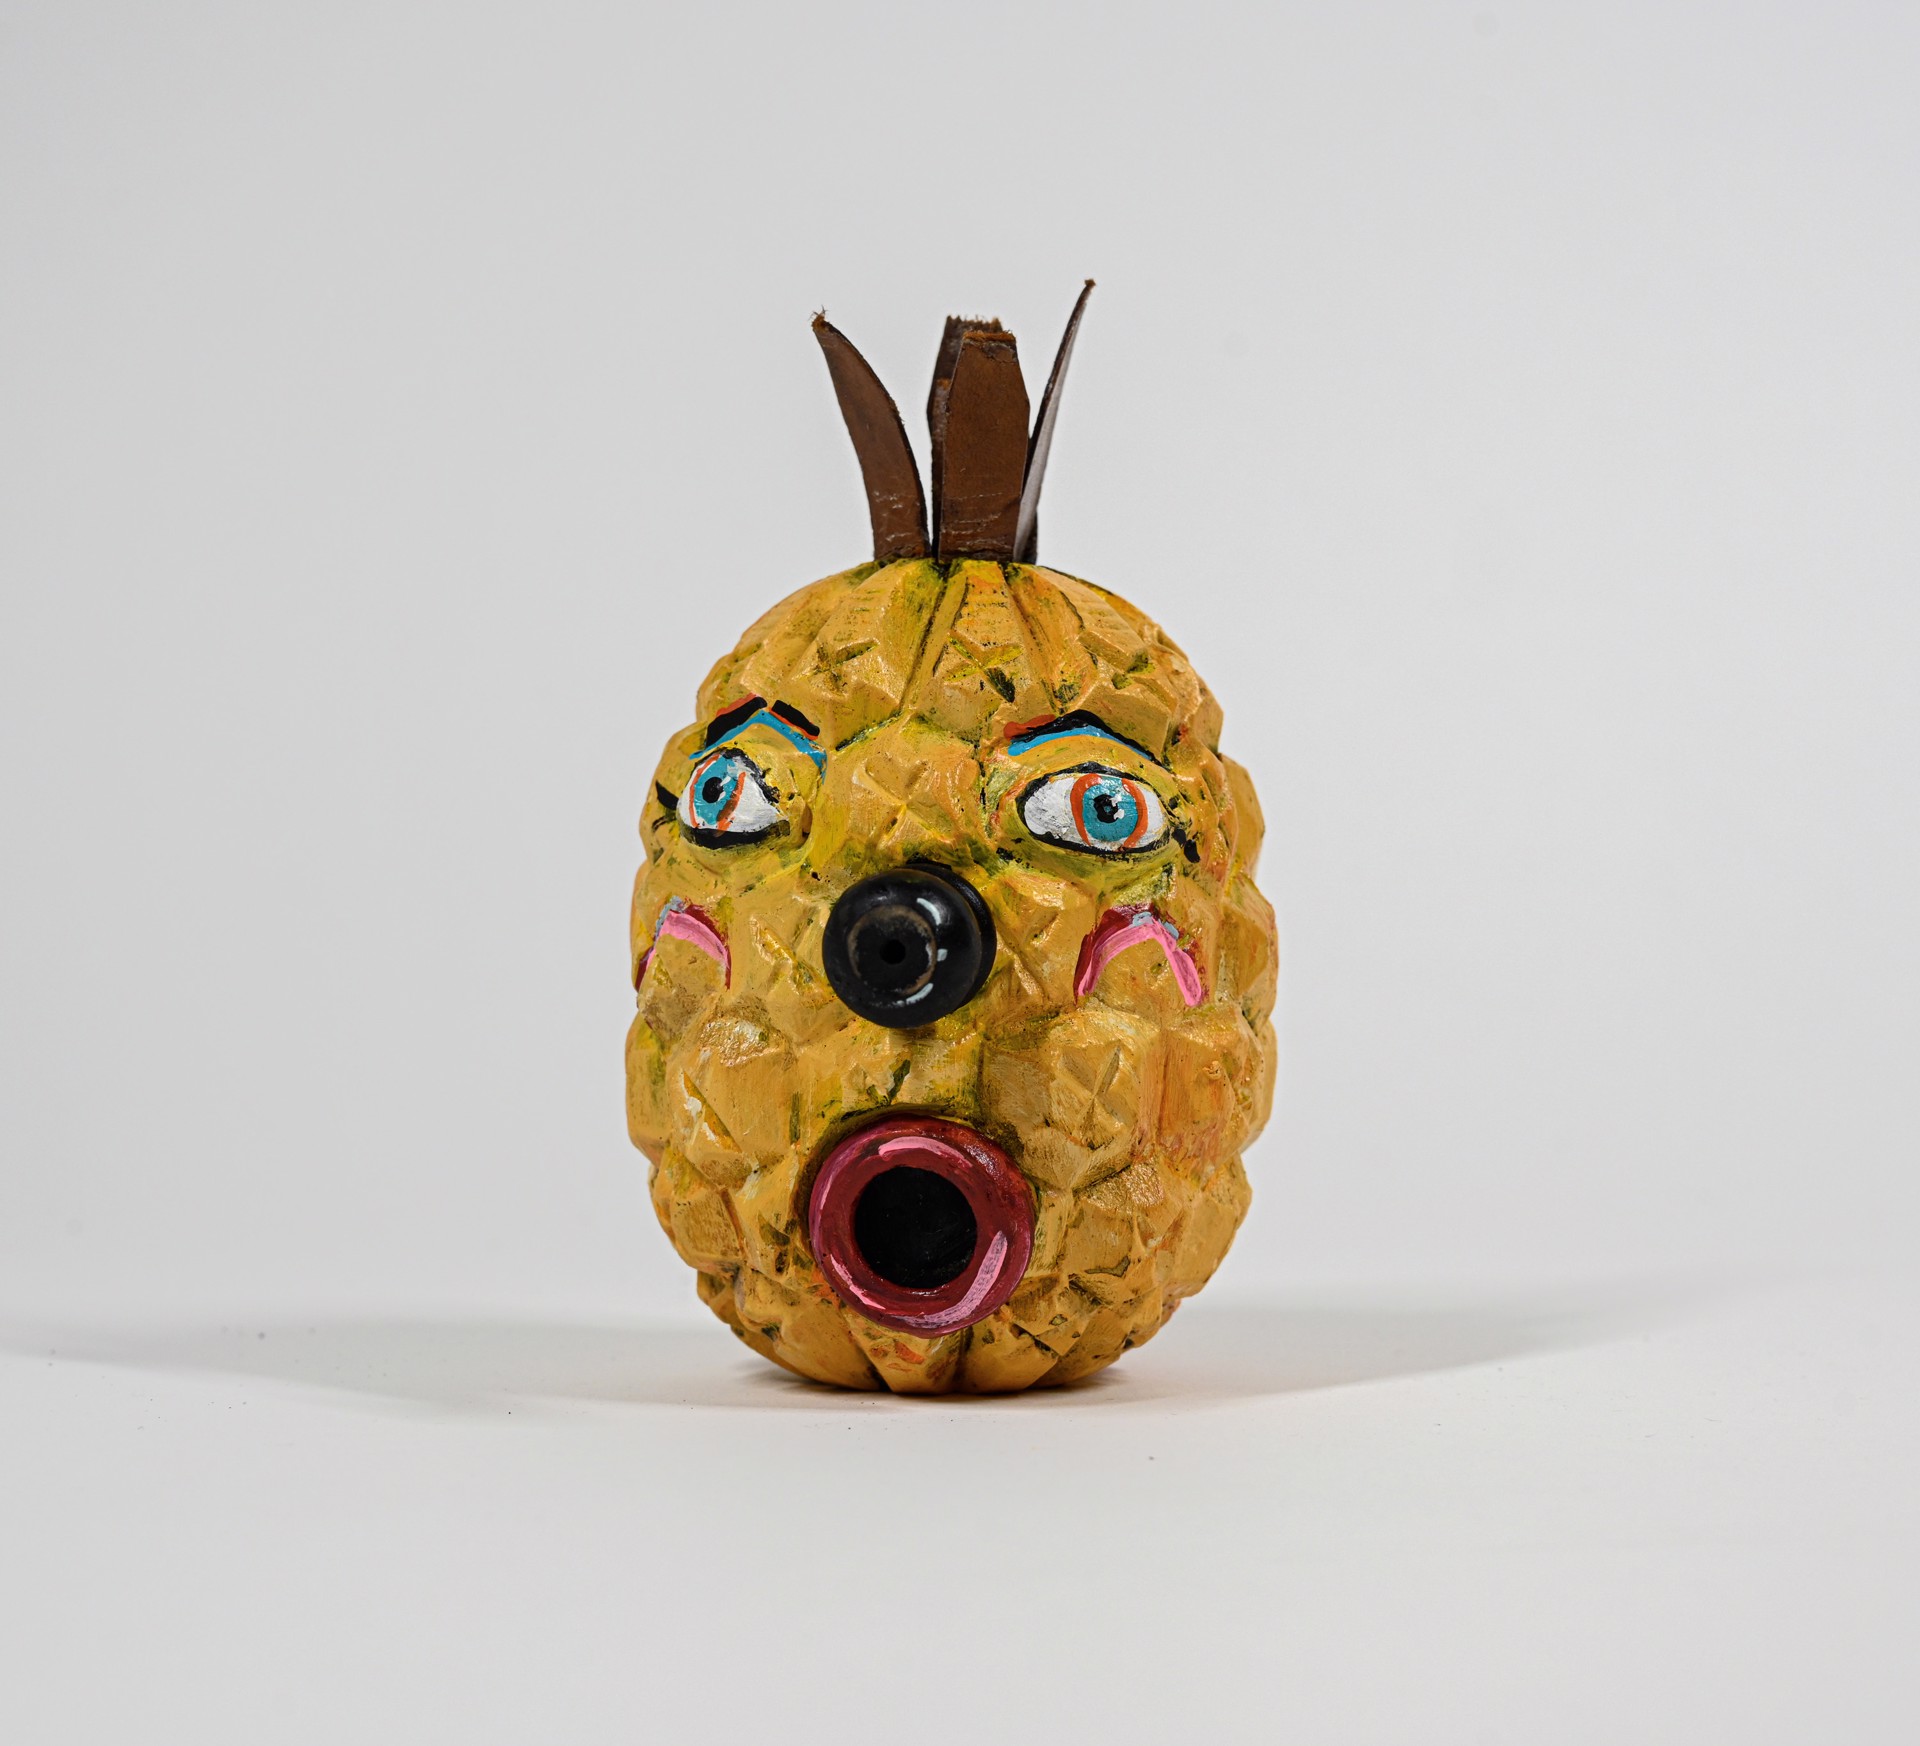 Surprised Pineapple by Stephanie Brockway